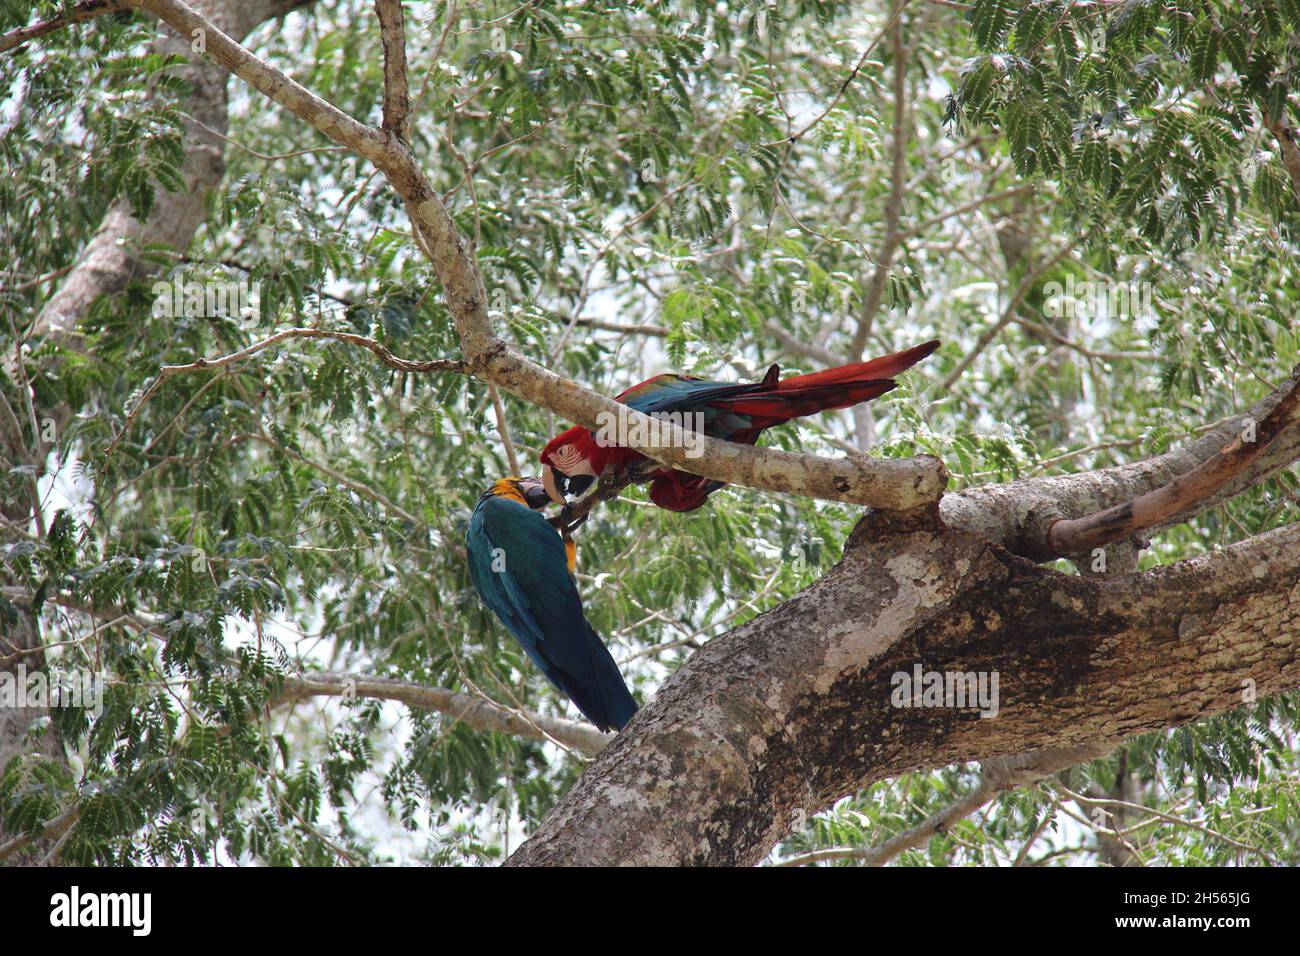 Ein paar rote und blaue Ara-Papageien auf einem Ast in Bonito - Mato Grosso do Sul - Brasilien. Stockfoto